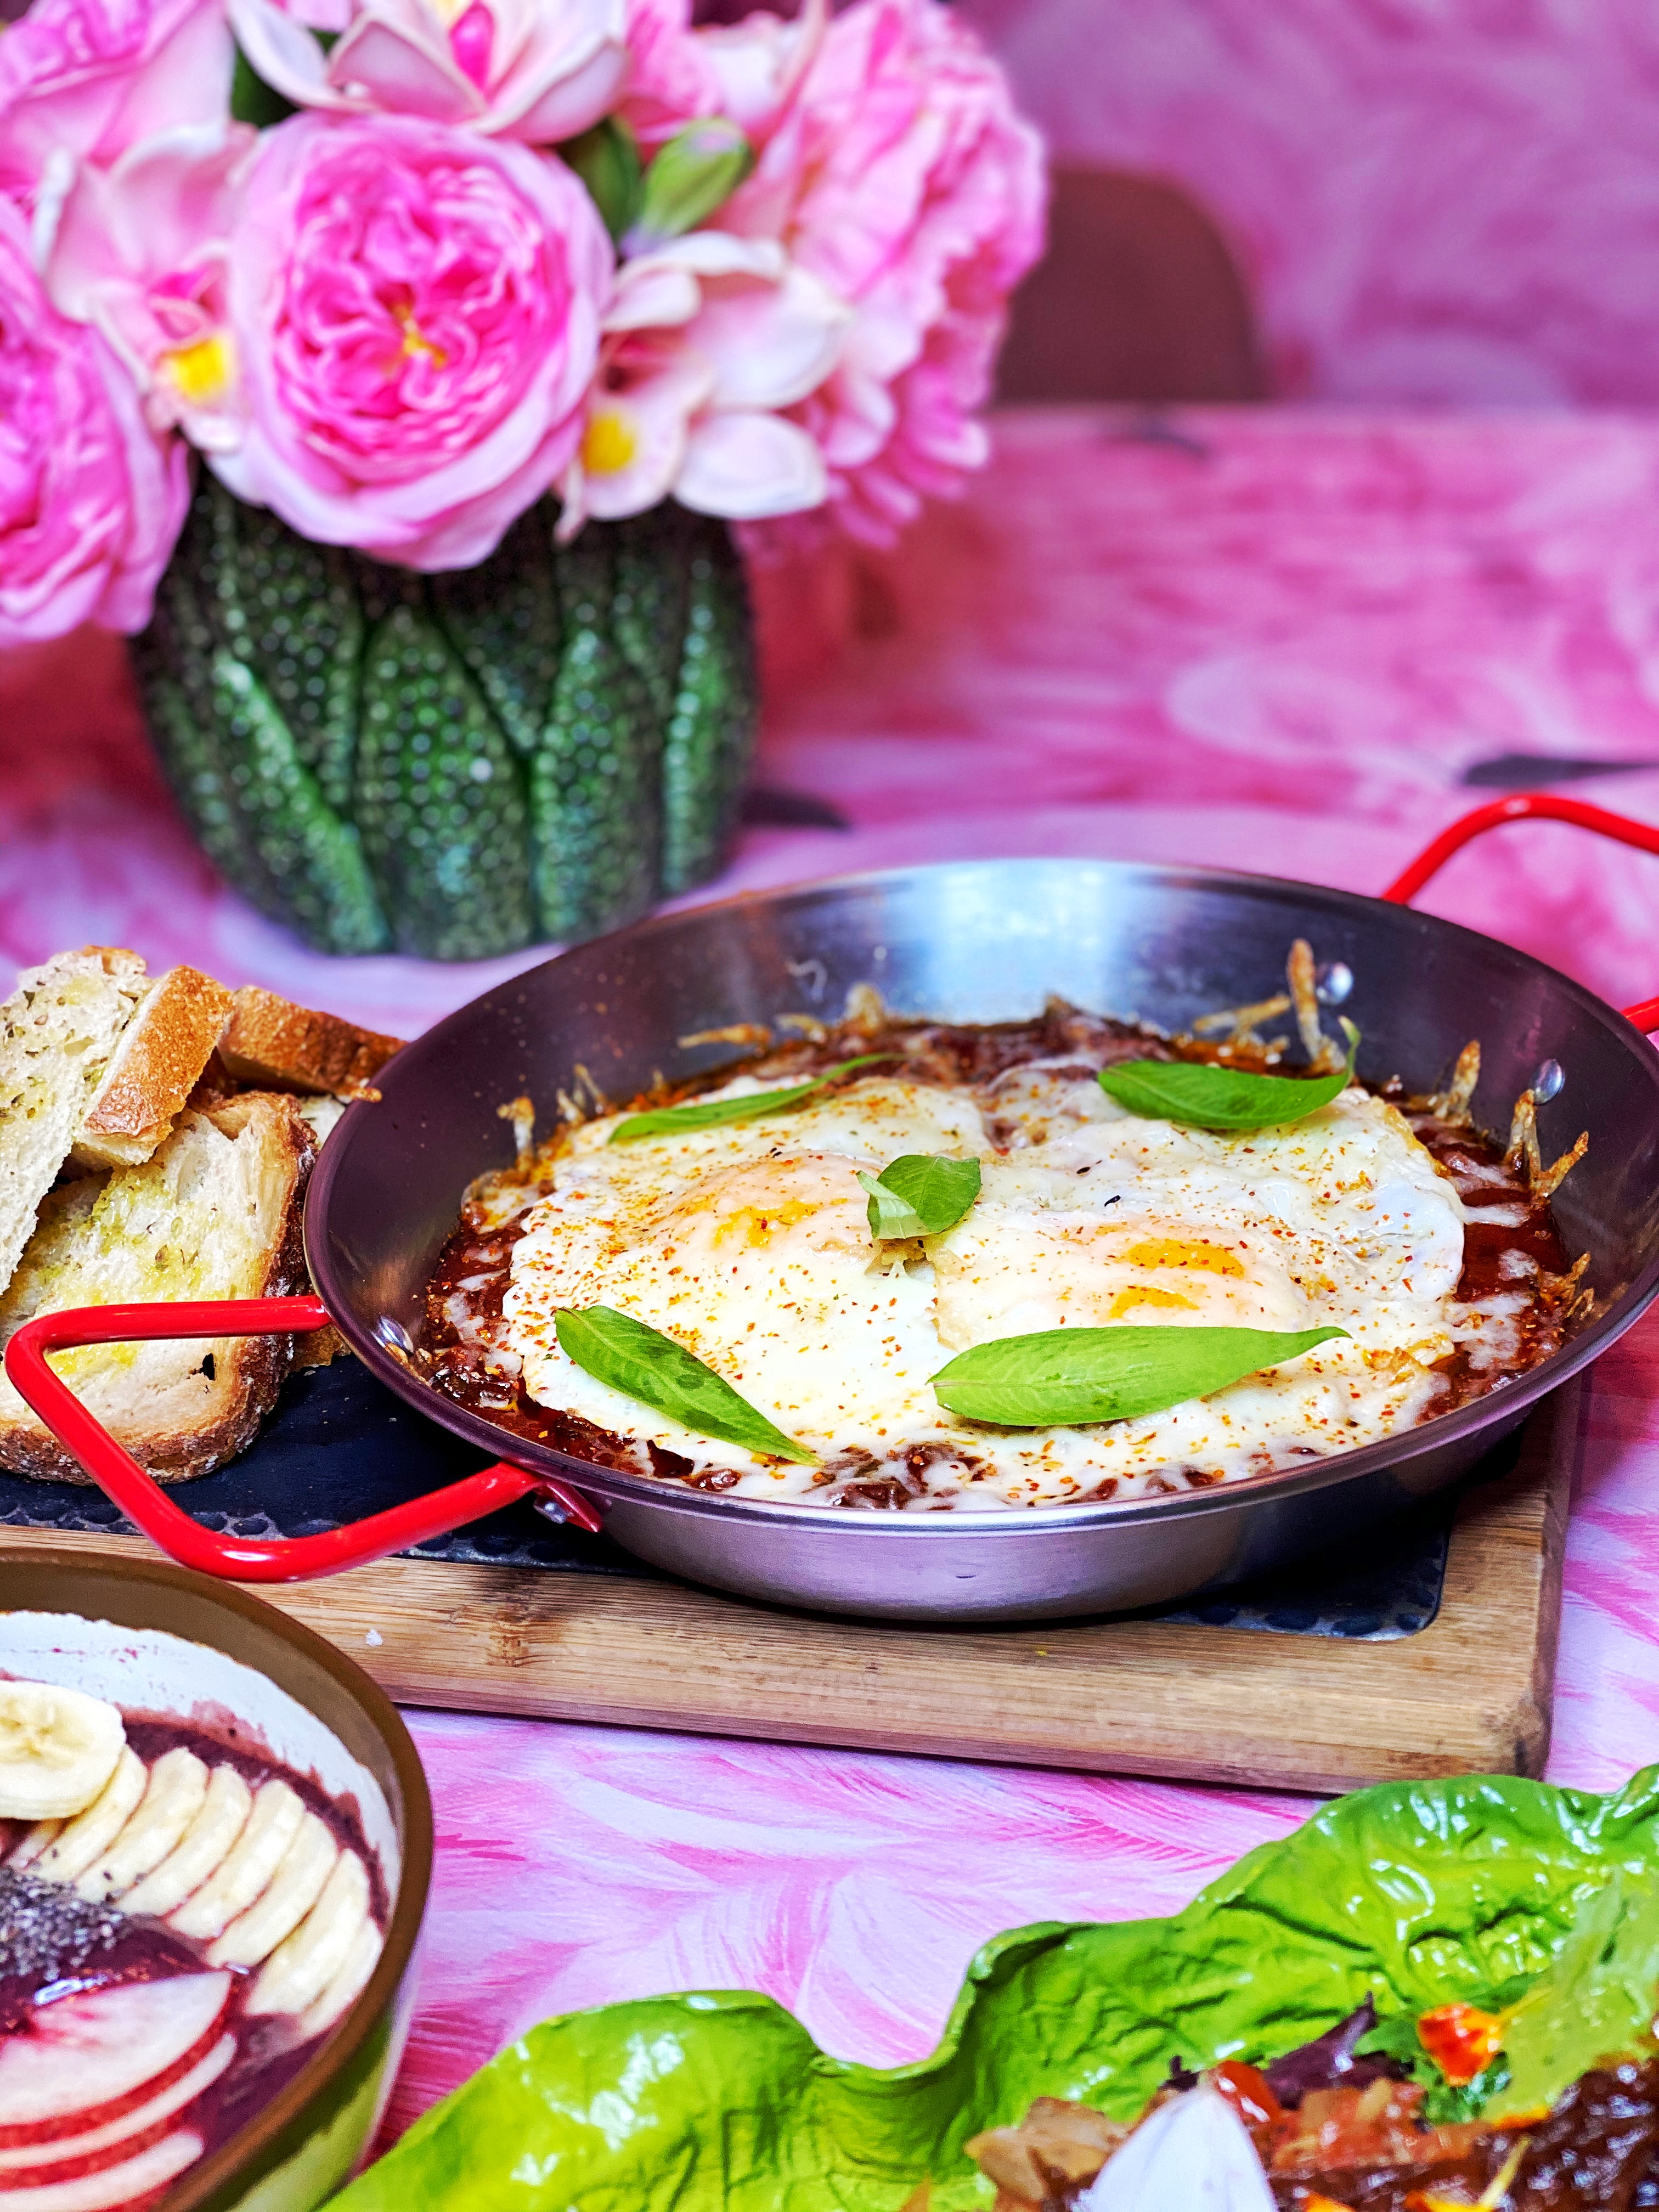 "Huevos a la flamenca". Pisto de verduras, huevo frito y scarmorza ahumada.